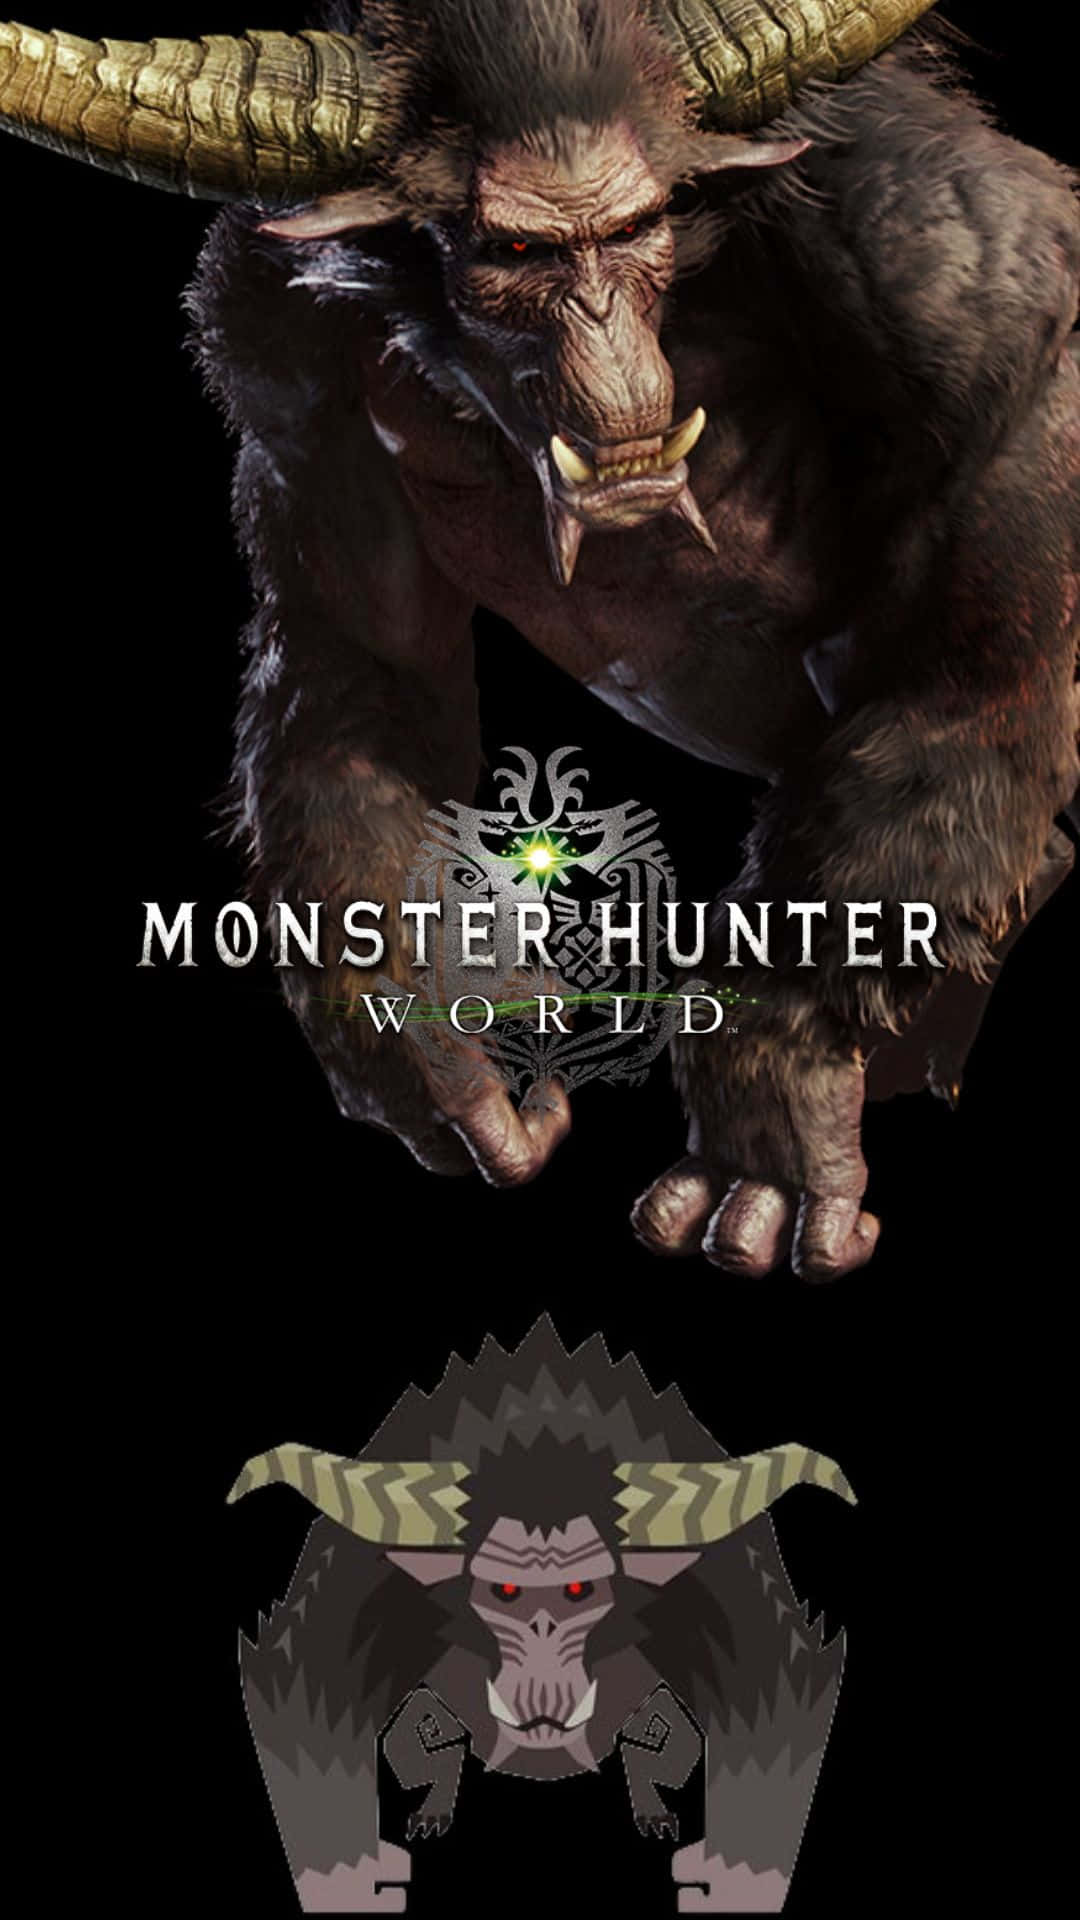 Scoprii Segreti Di Monster Hunter World Su Android